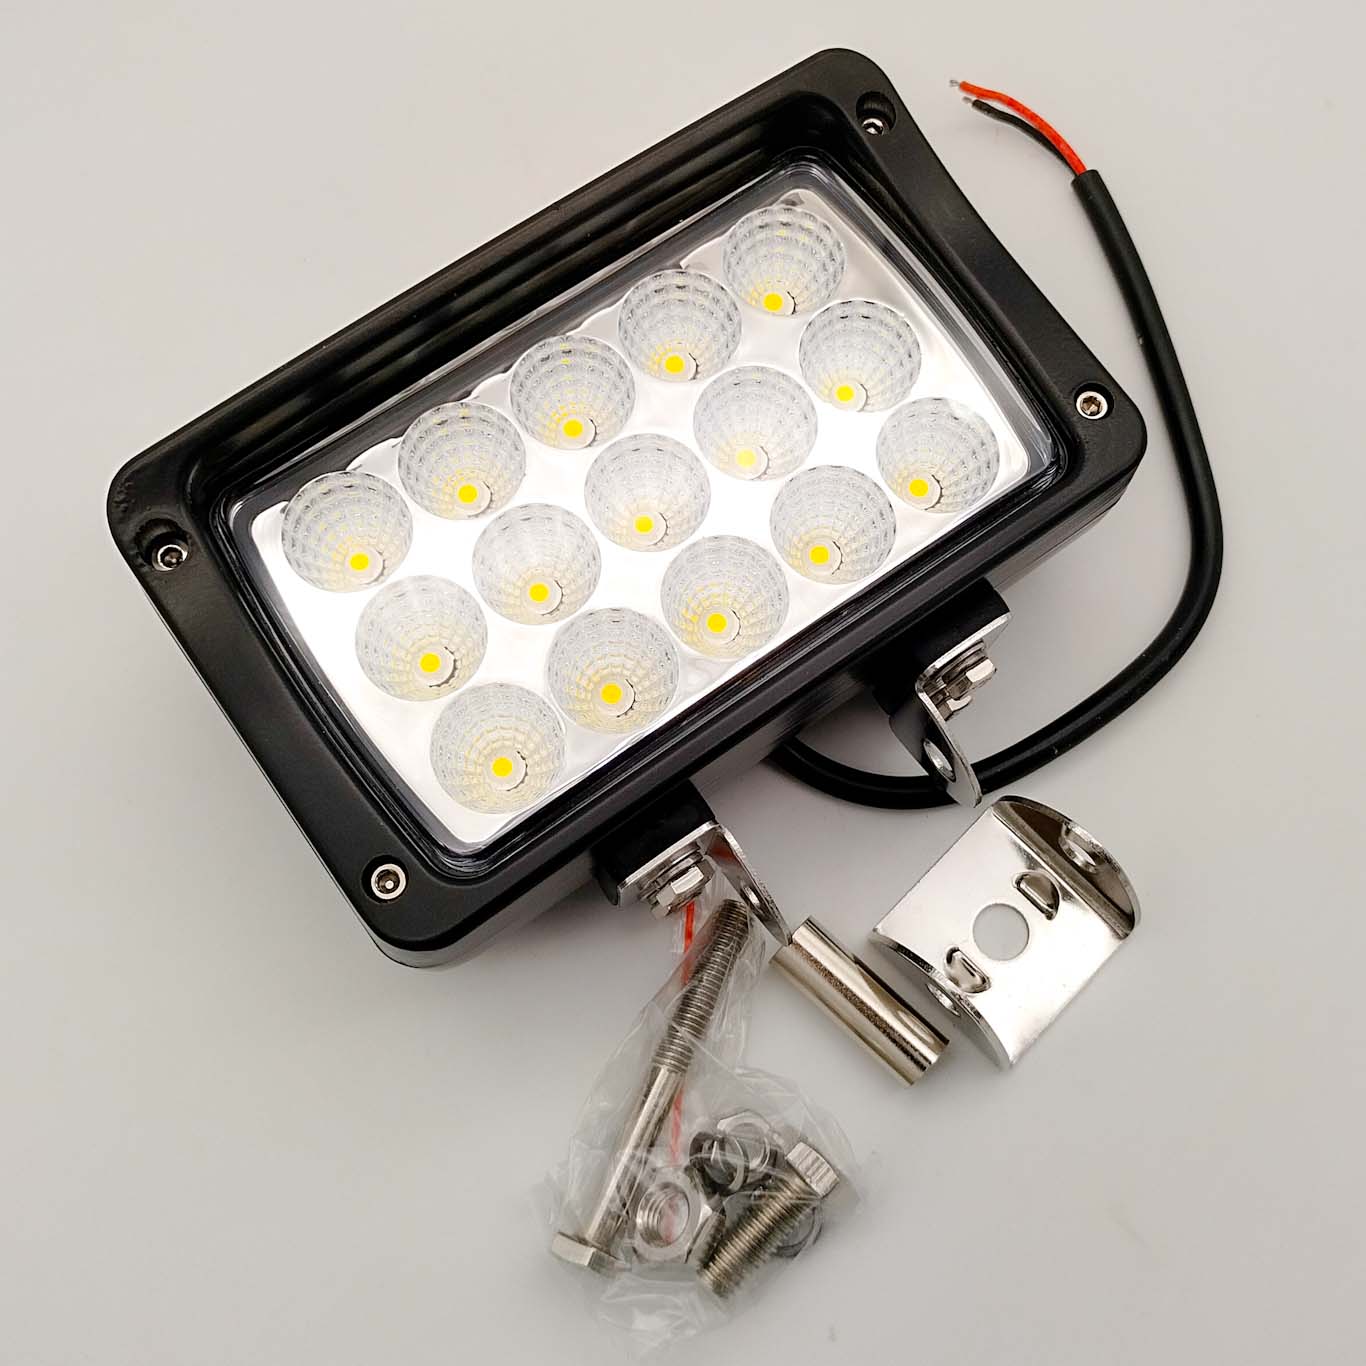 TruckLED LED pracovní světlo 45W (3375 lm), 24V, IP67, 6500K [L0089]